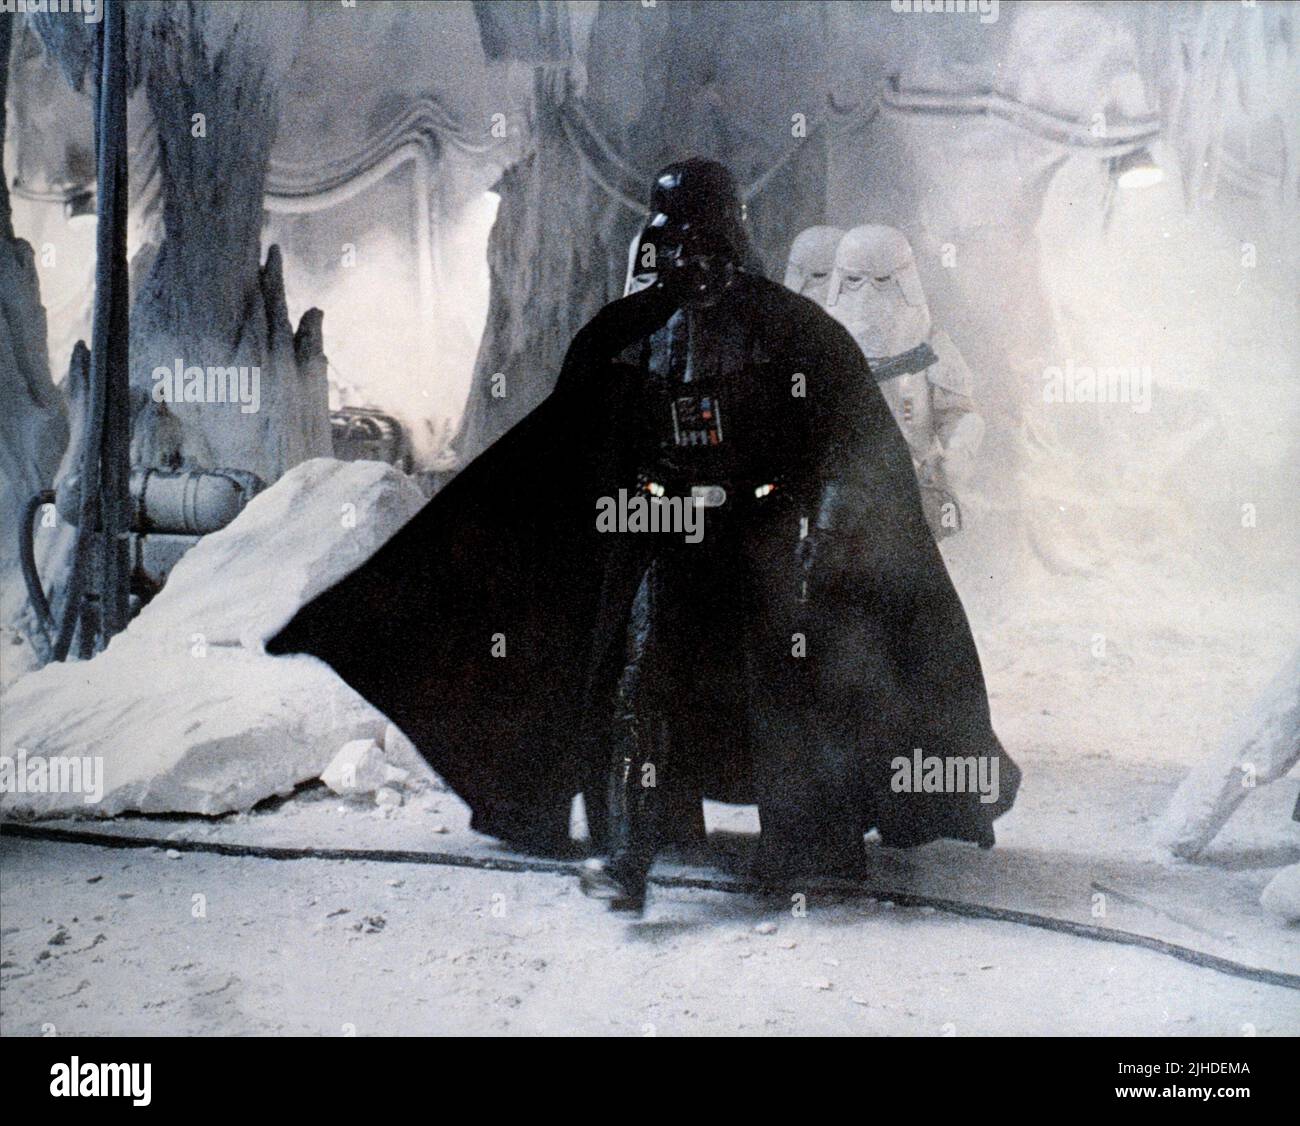 David Prowse Film: Star Wars: Episode V - The Empire Strikes Back (USA  1980) Characters: Darth Vader / Neuer Titel Auch: "Star Wars: Episode V -  Das Imperium Schlägt Zurück" Director: Irvin